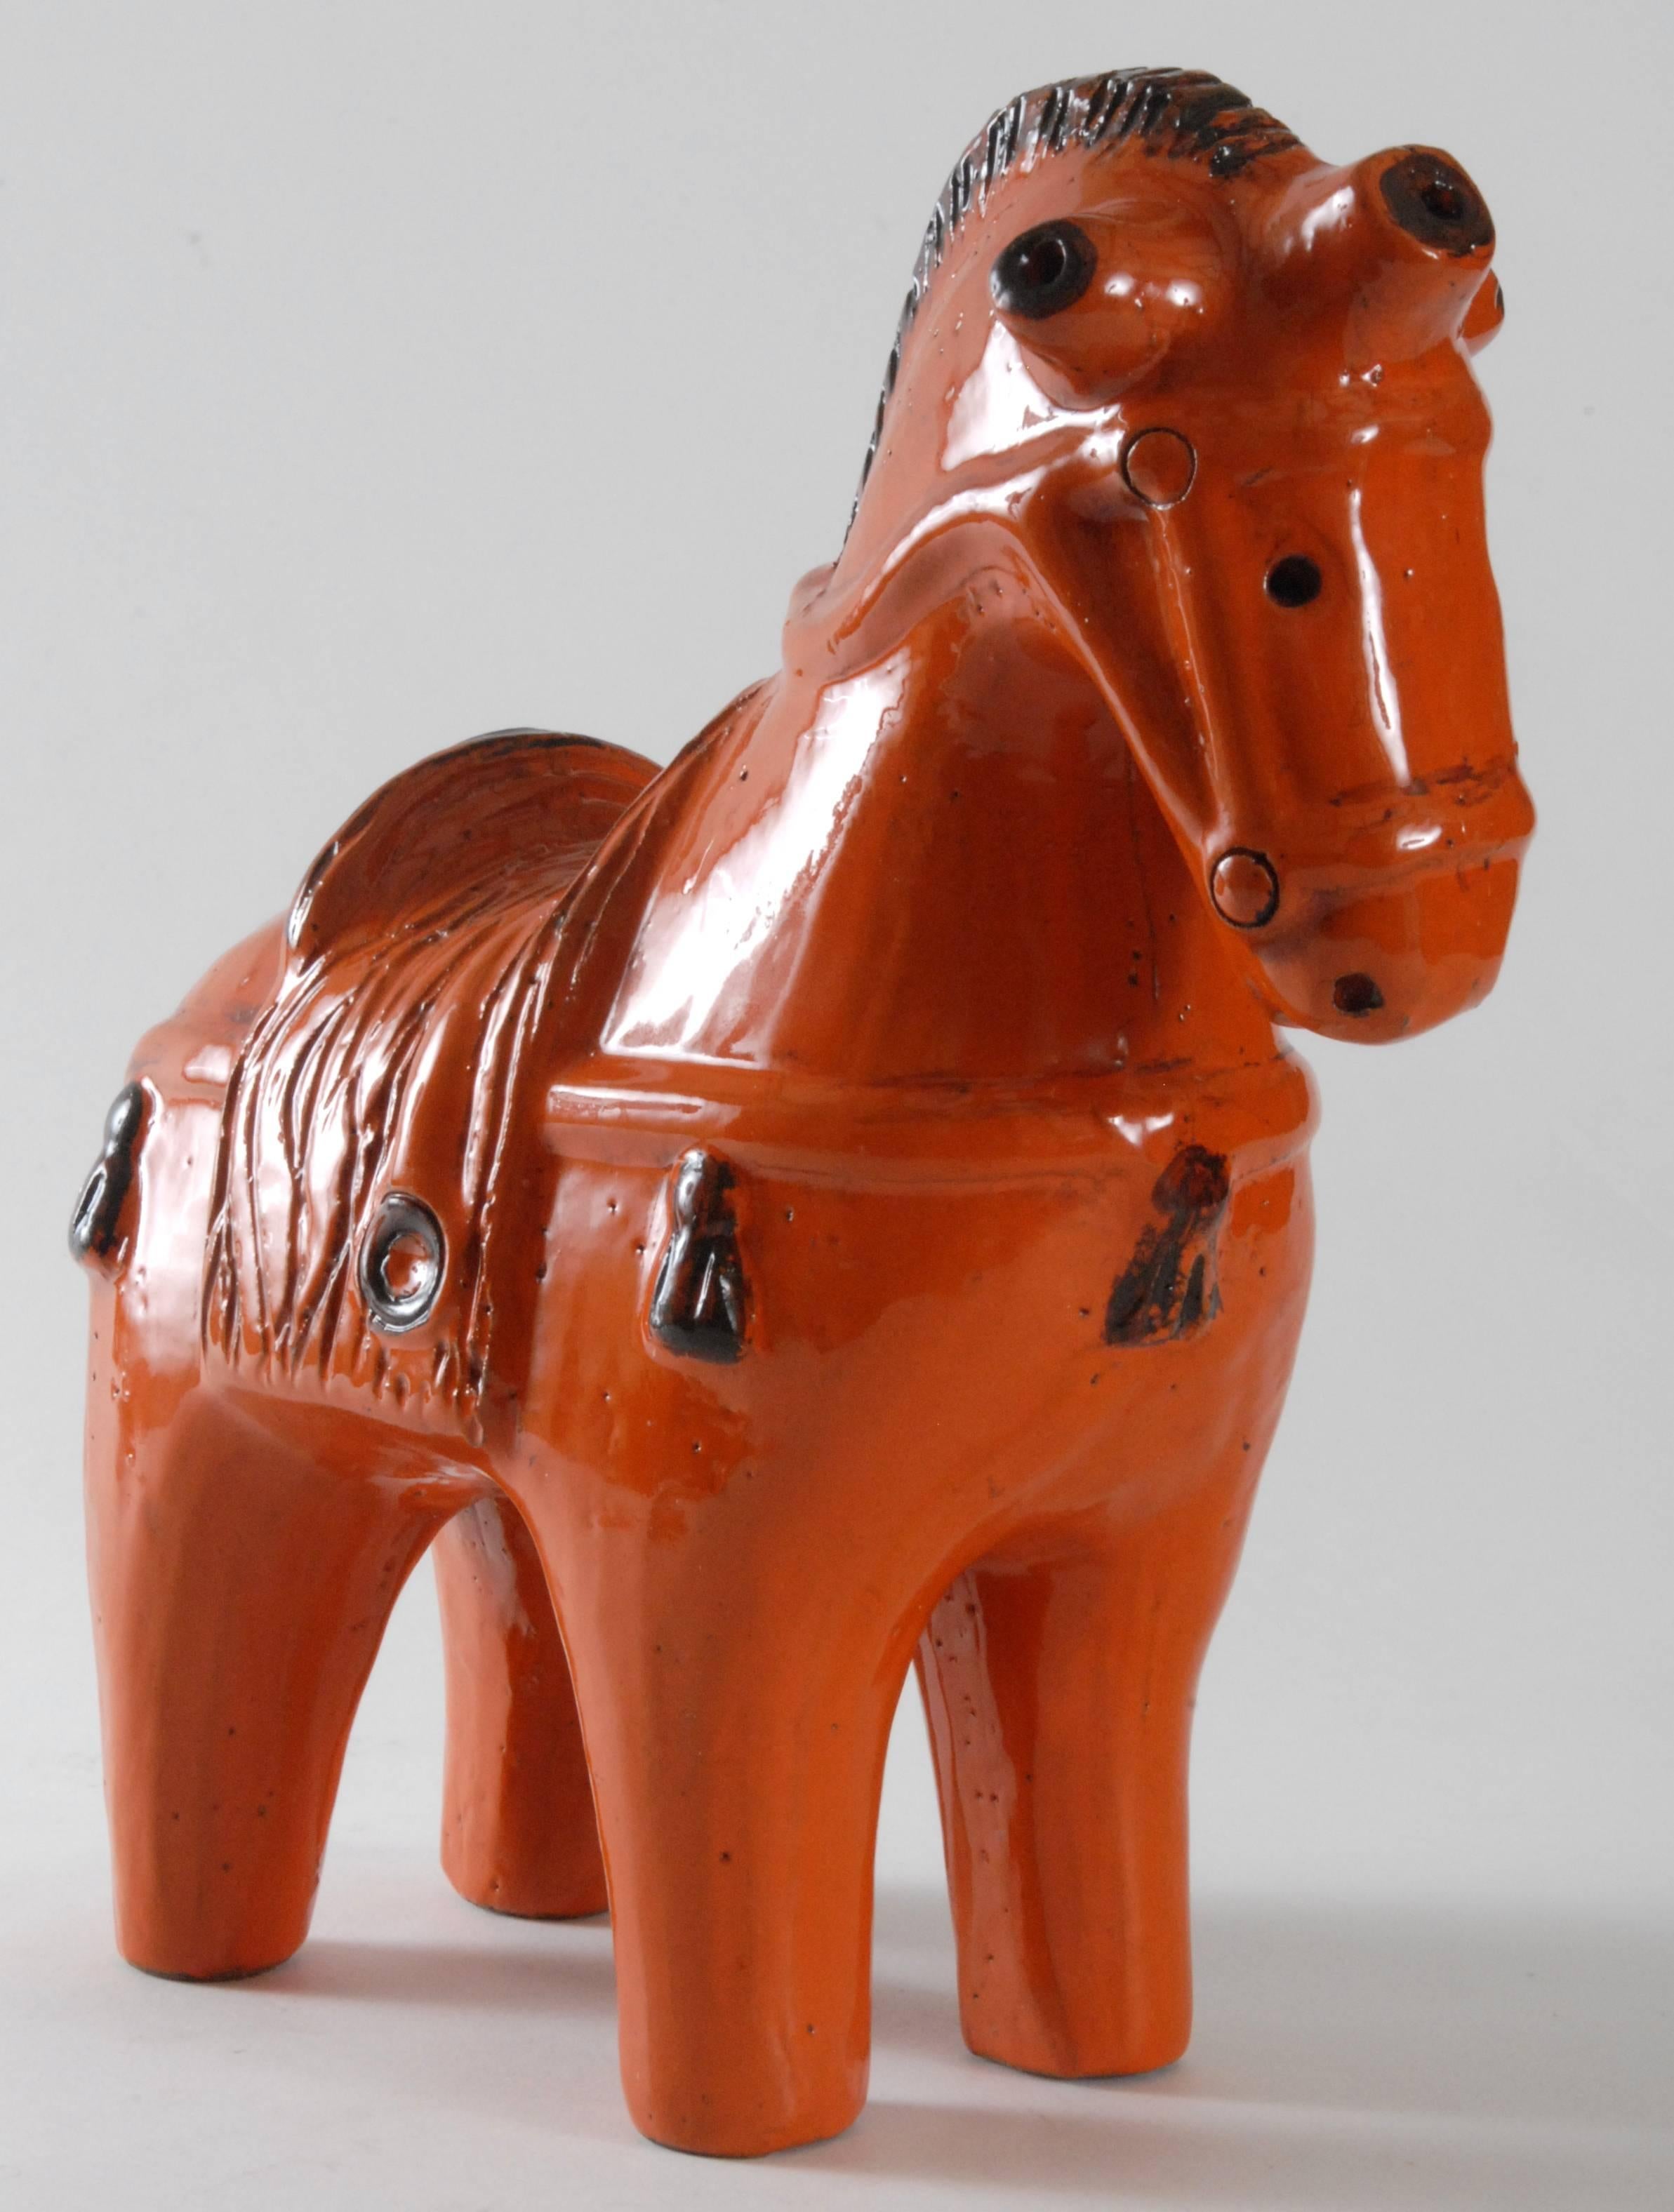 Ein großes:: von Aldo Londi entworfenes:: leuchtend orangefarbenes Pferd. Die stark stilisierte Form ähnelt antiken Tonpferden aus dem alten Griechenland:: Rom oder China. Dies ist die große Größe mit 31 cm Höhe.